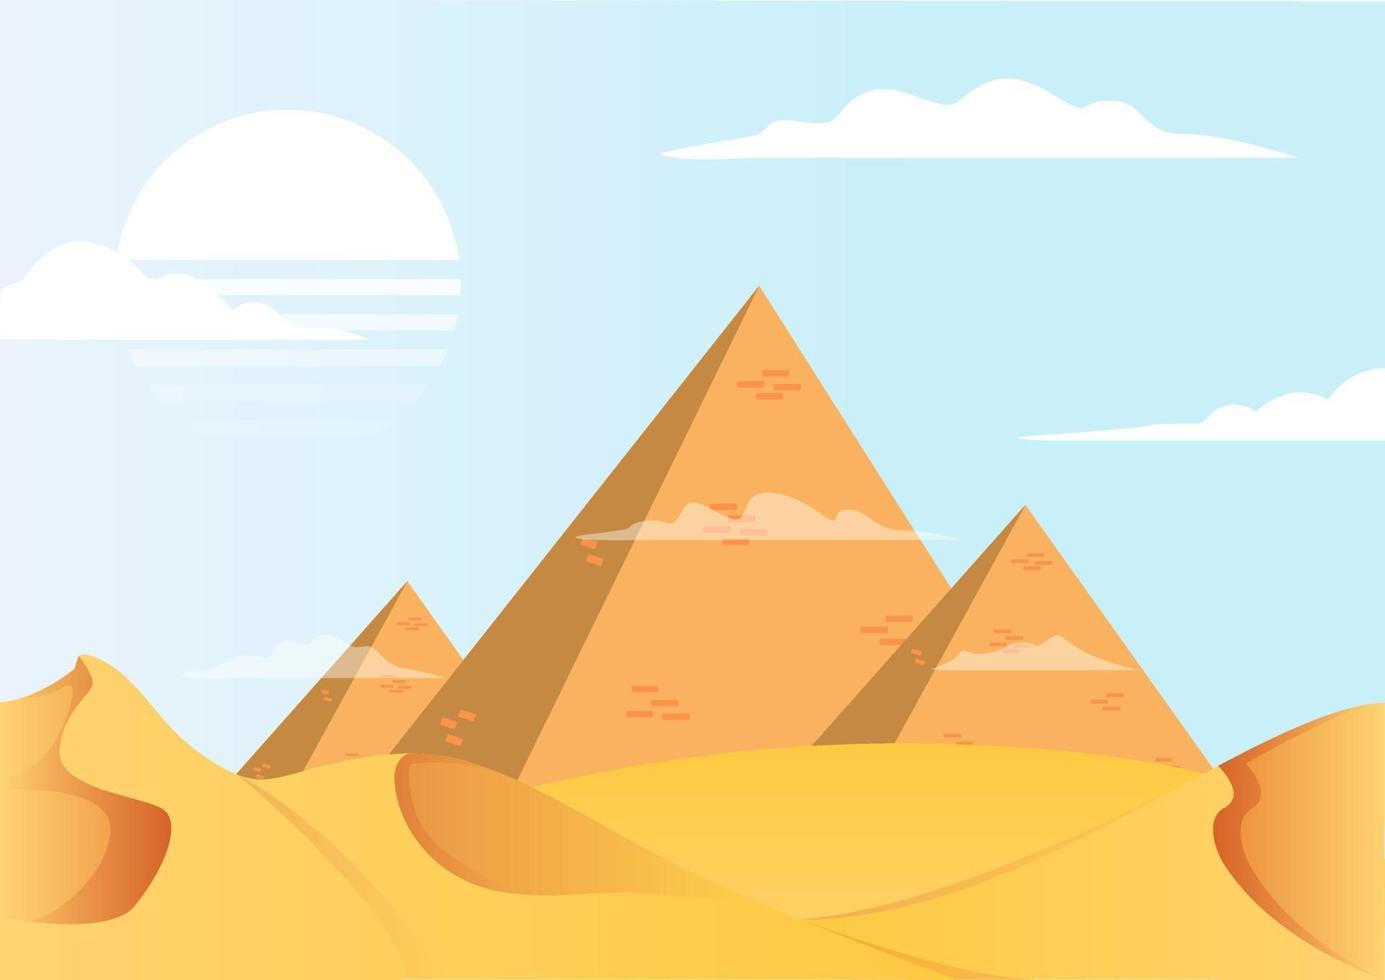 vivido piramide deserto paesaggio piatto design vettore